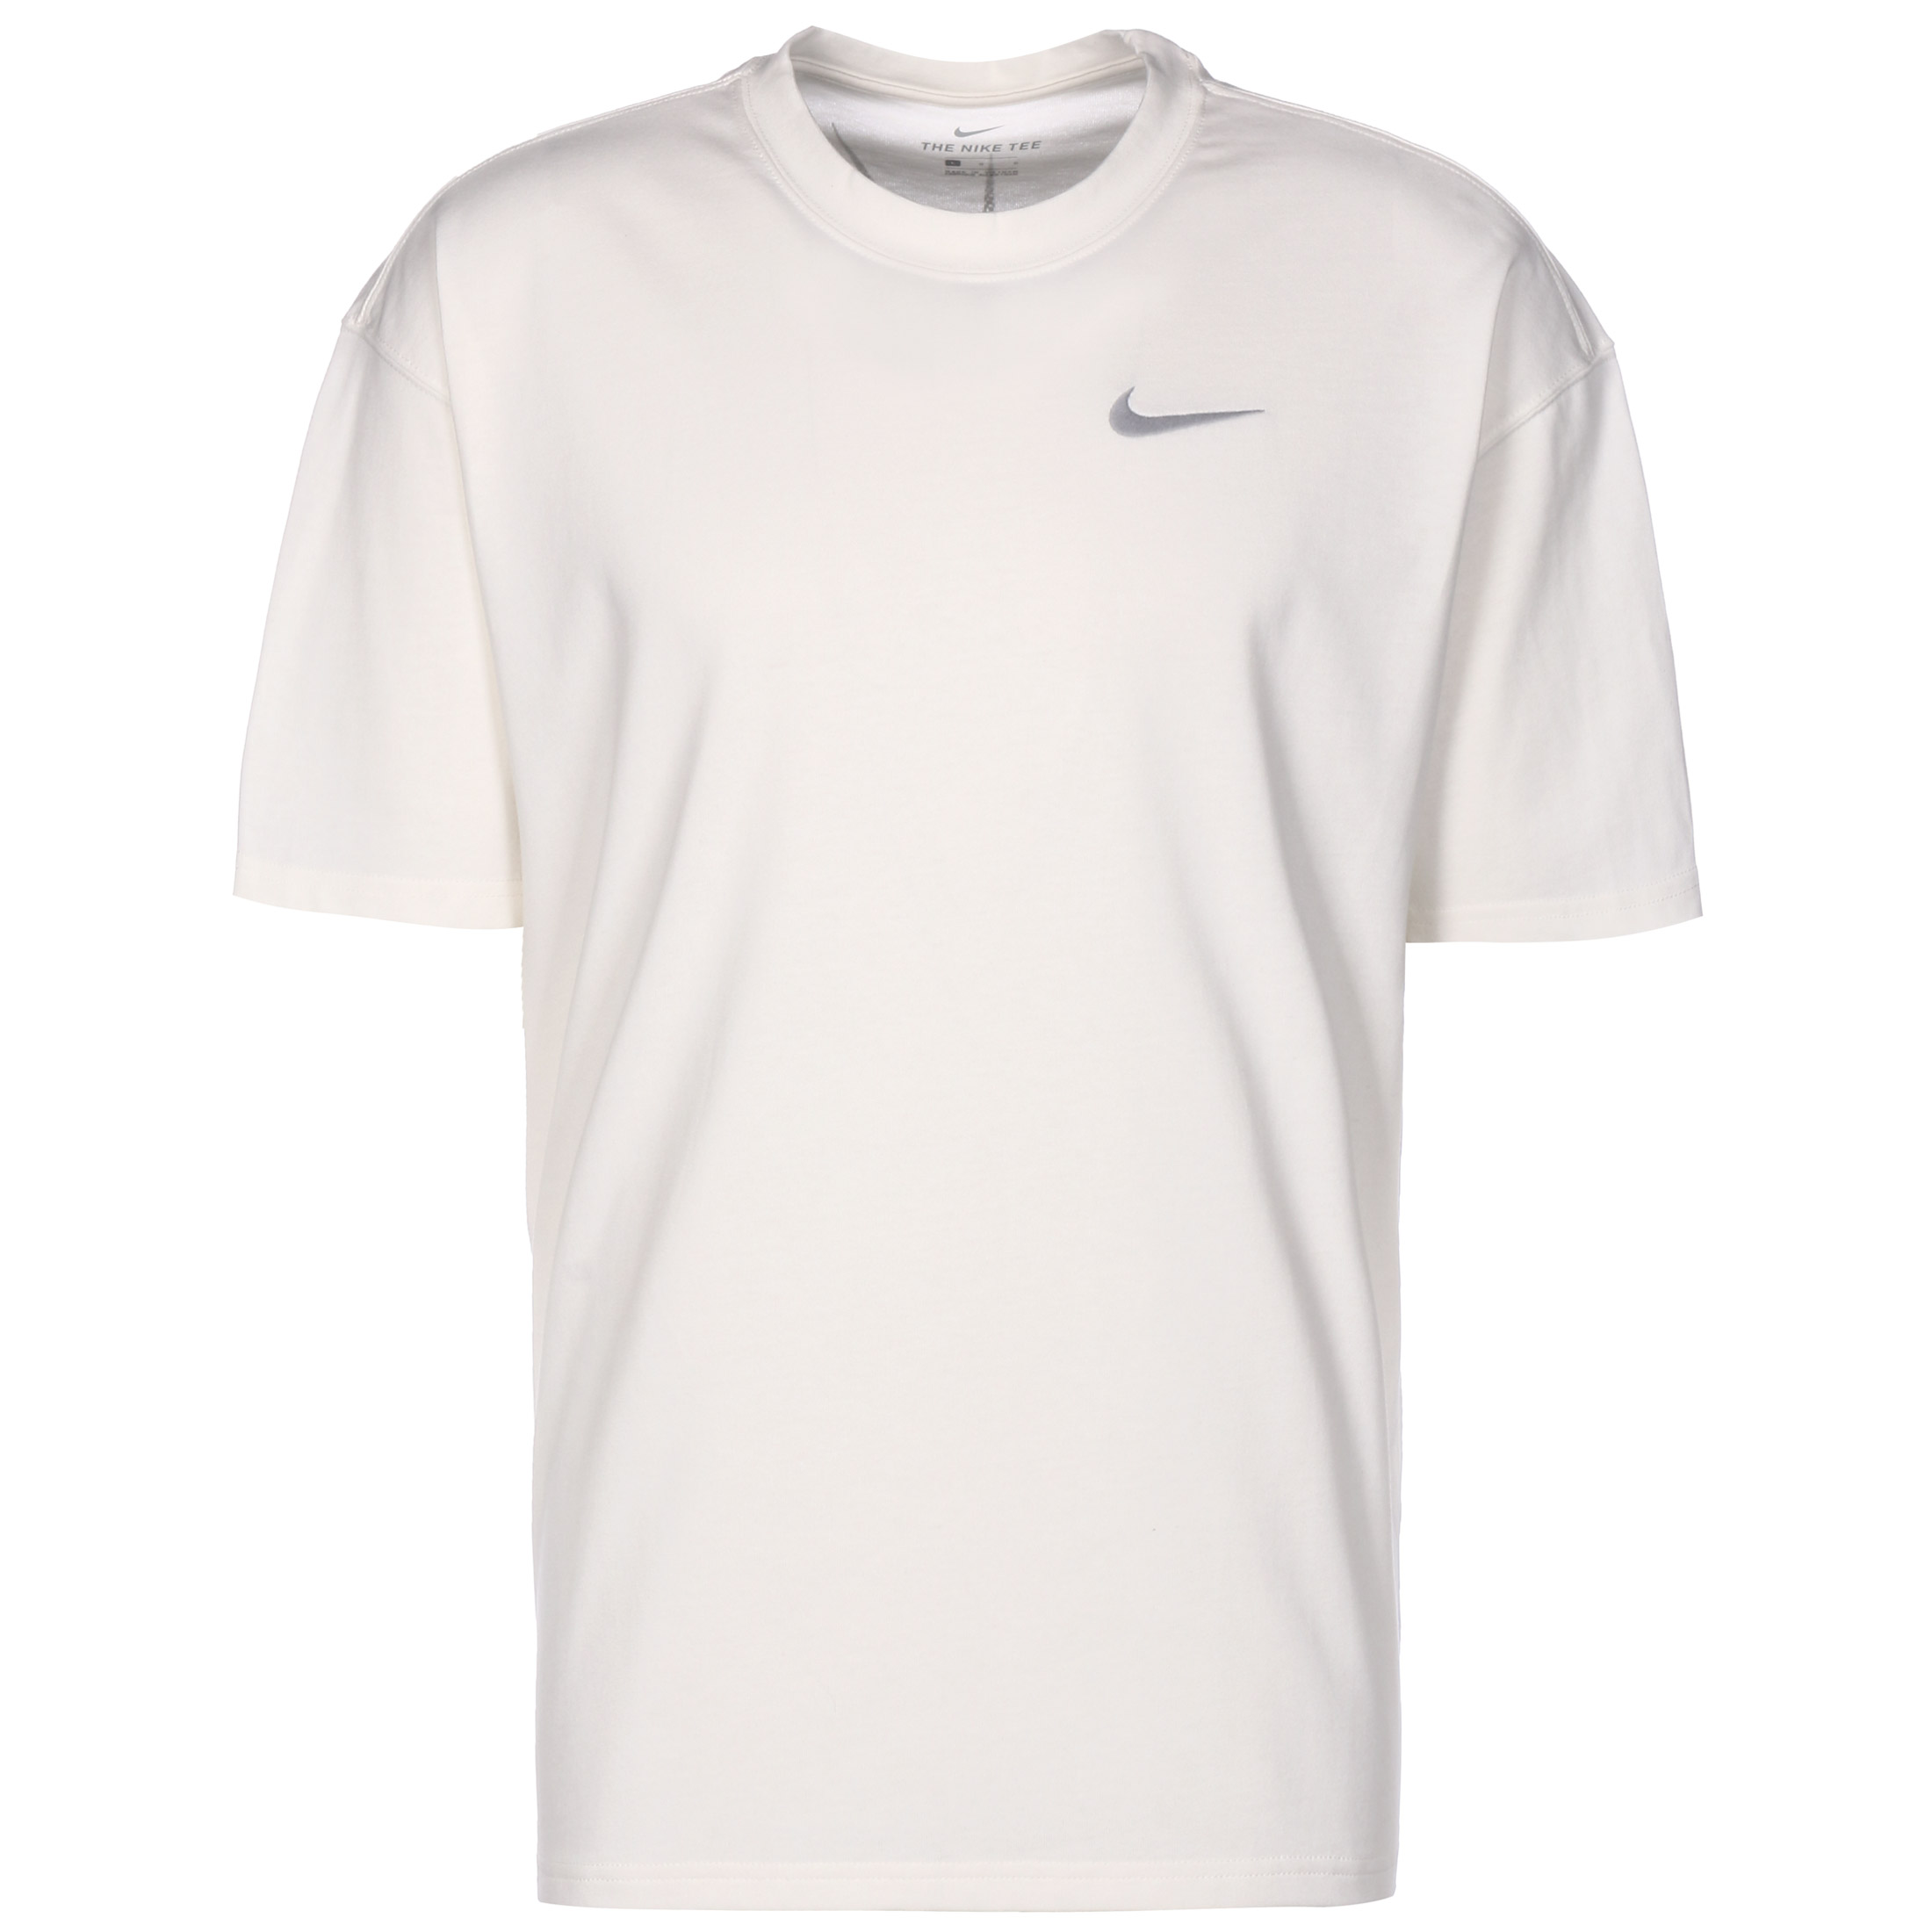 Nike Performance Move 2 Zero T-Shirt Herren weiß / schwarz kaufen ...